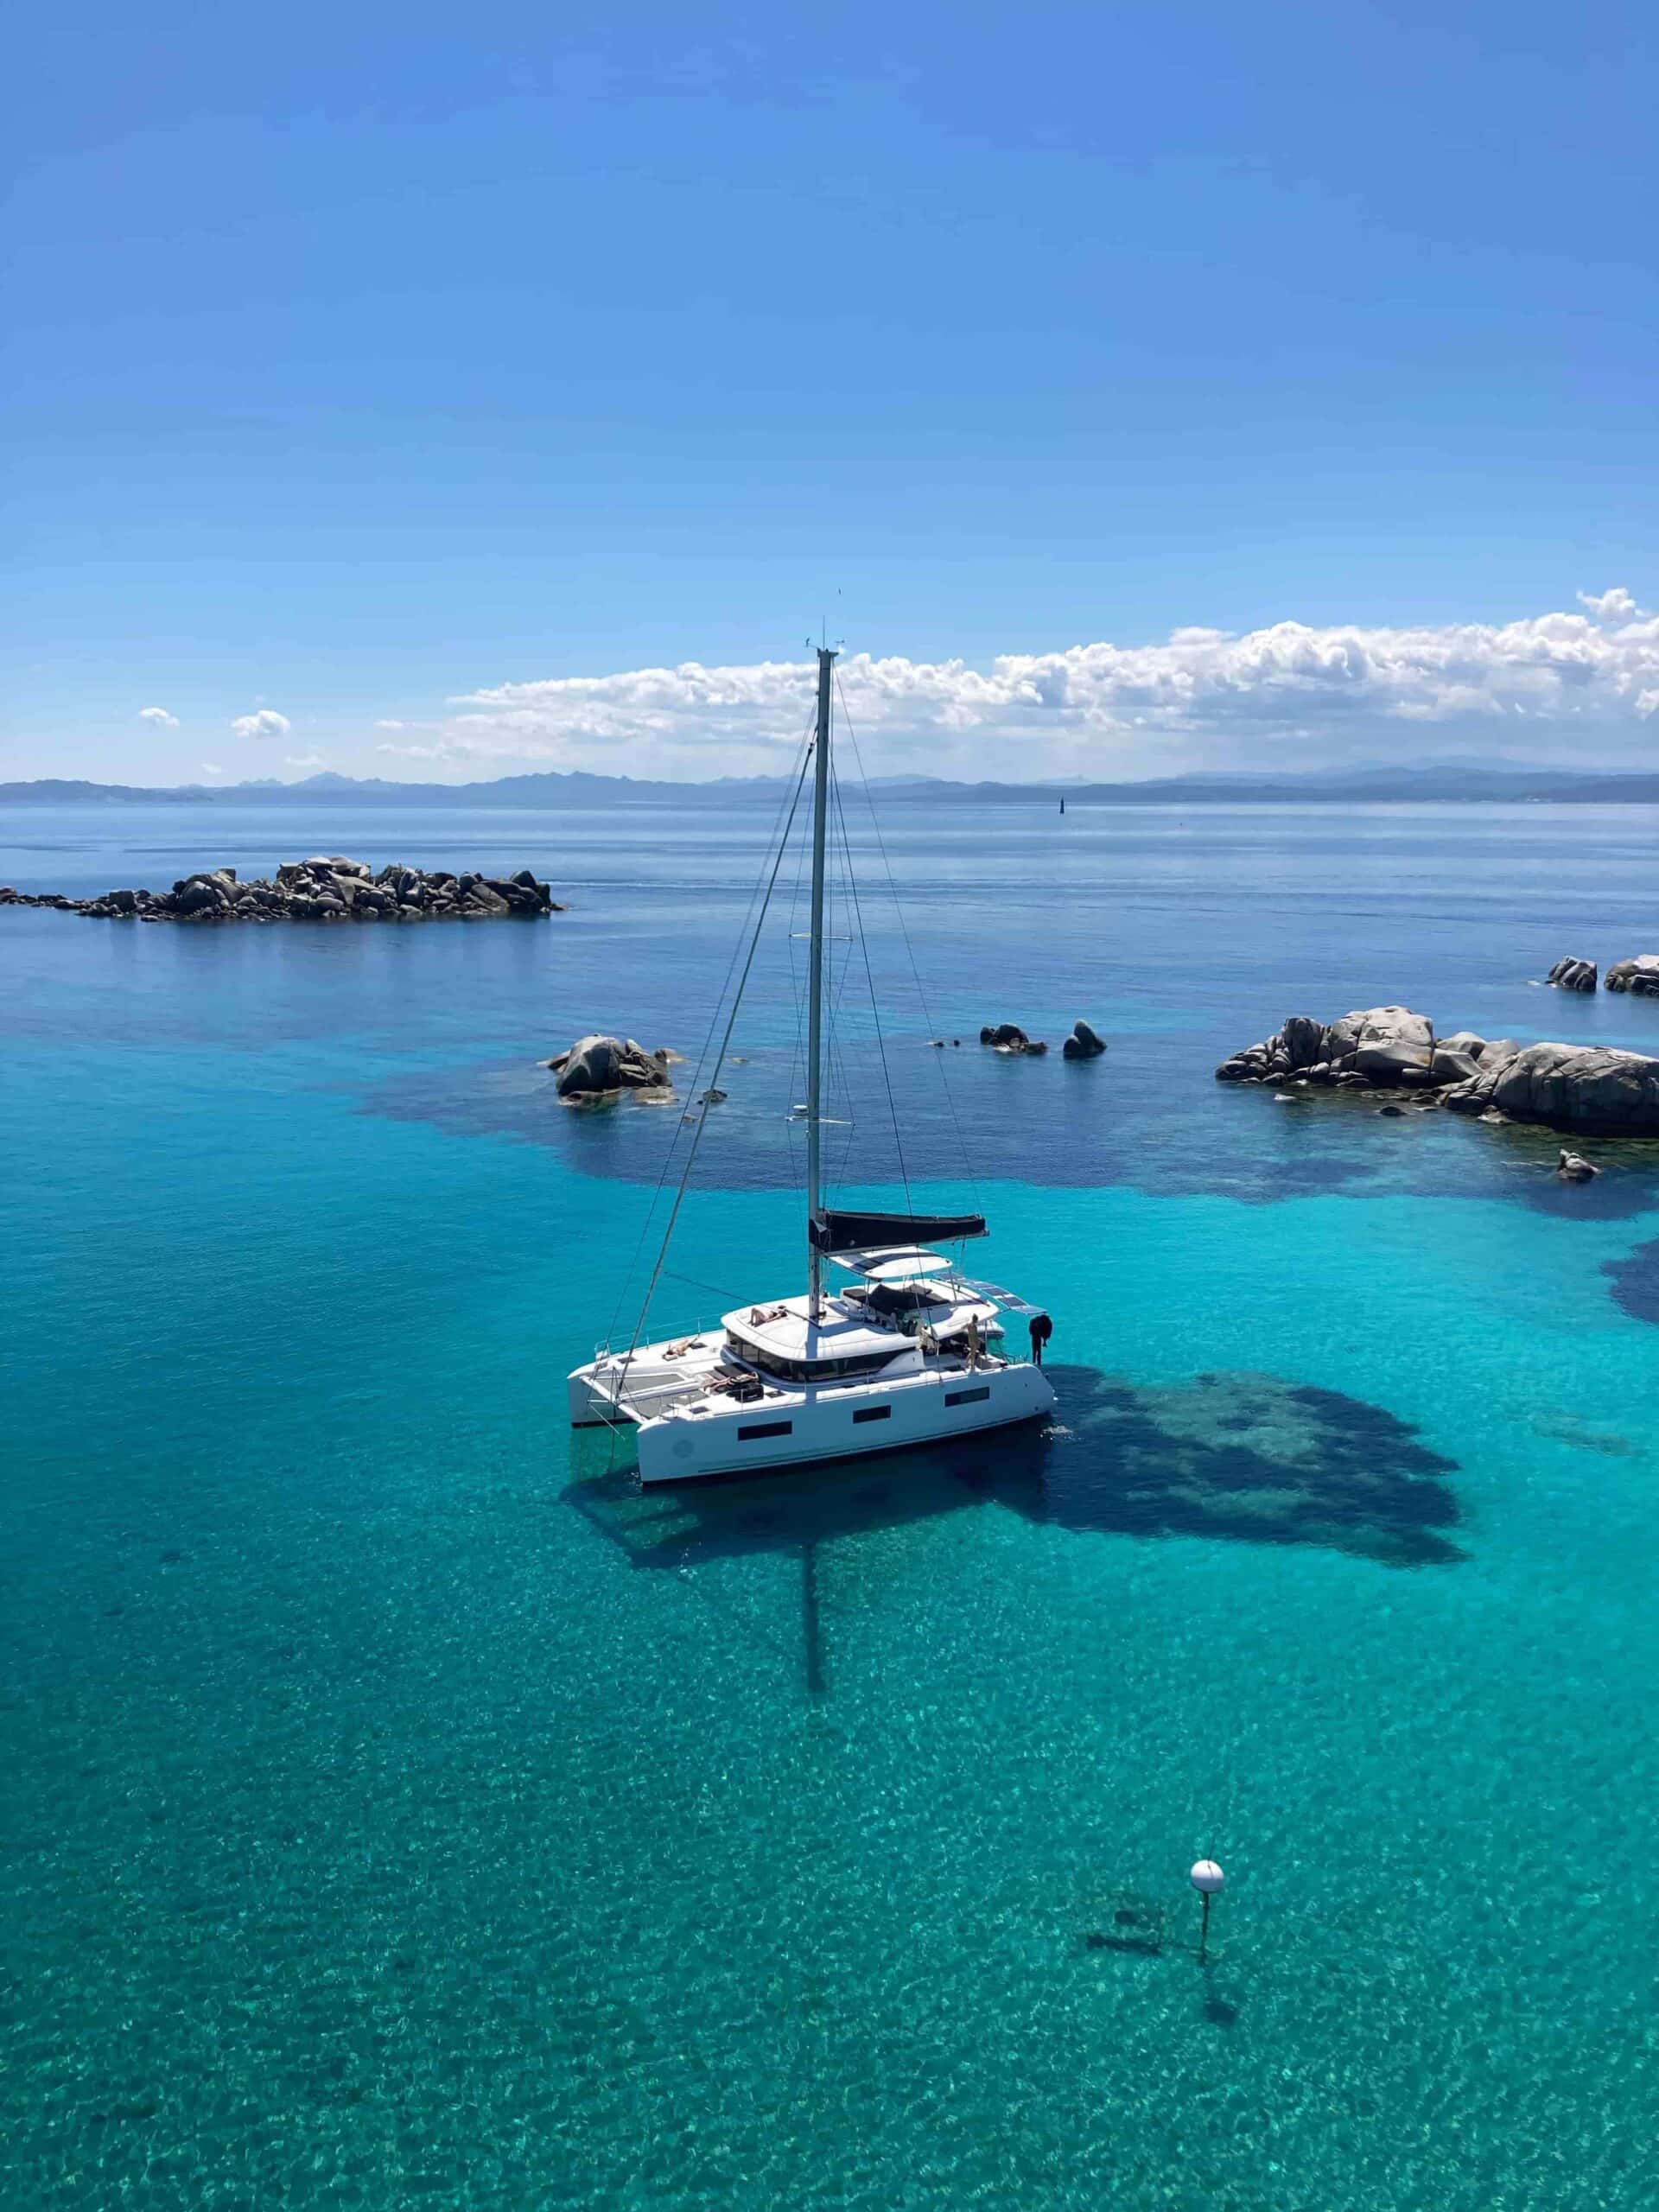 Ein weißes Segelboot ankert in klarem, türkisfarbenem Wasser mit einer felsigen Küste im Hintergrund. Das ruhige Meer spiegelt den blauen Himmel mit flauschigen Wolken und schafft eine ruhige und idyllische Szene, perfekt für einen Segeltörn.